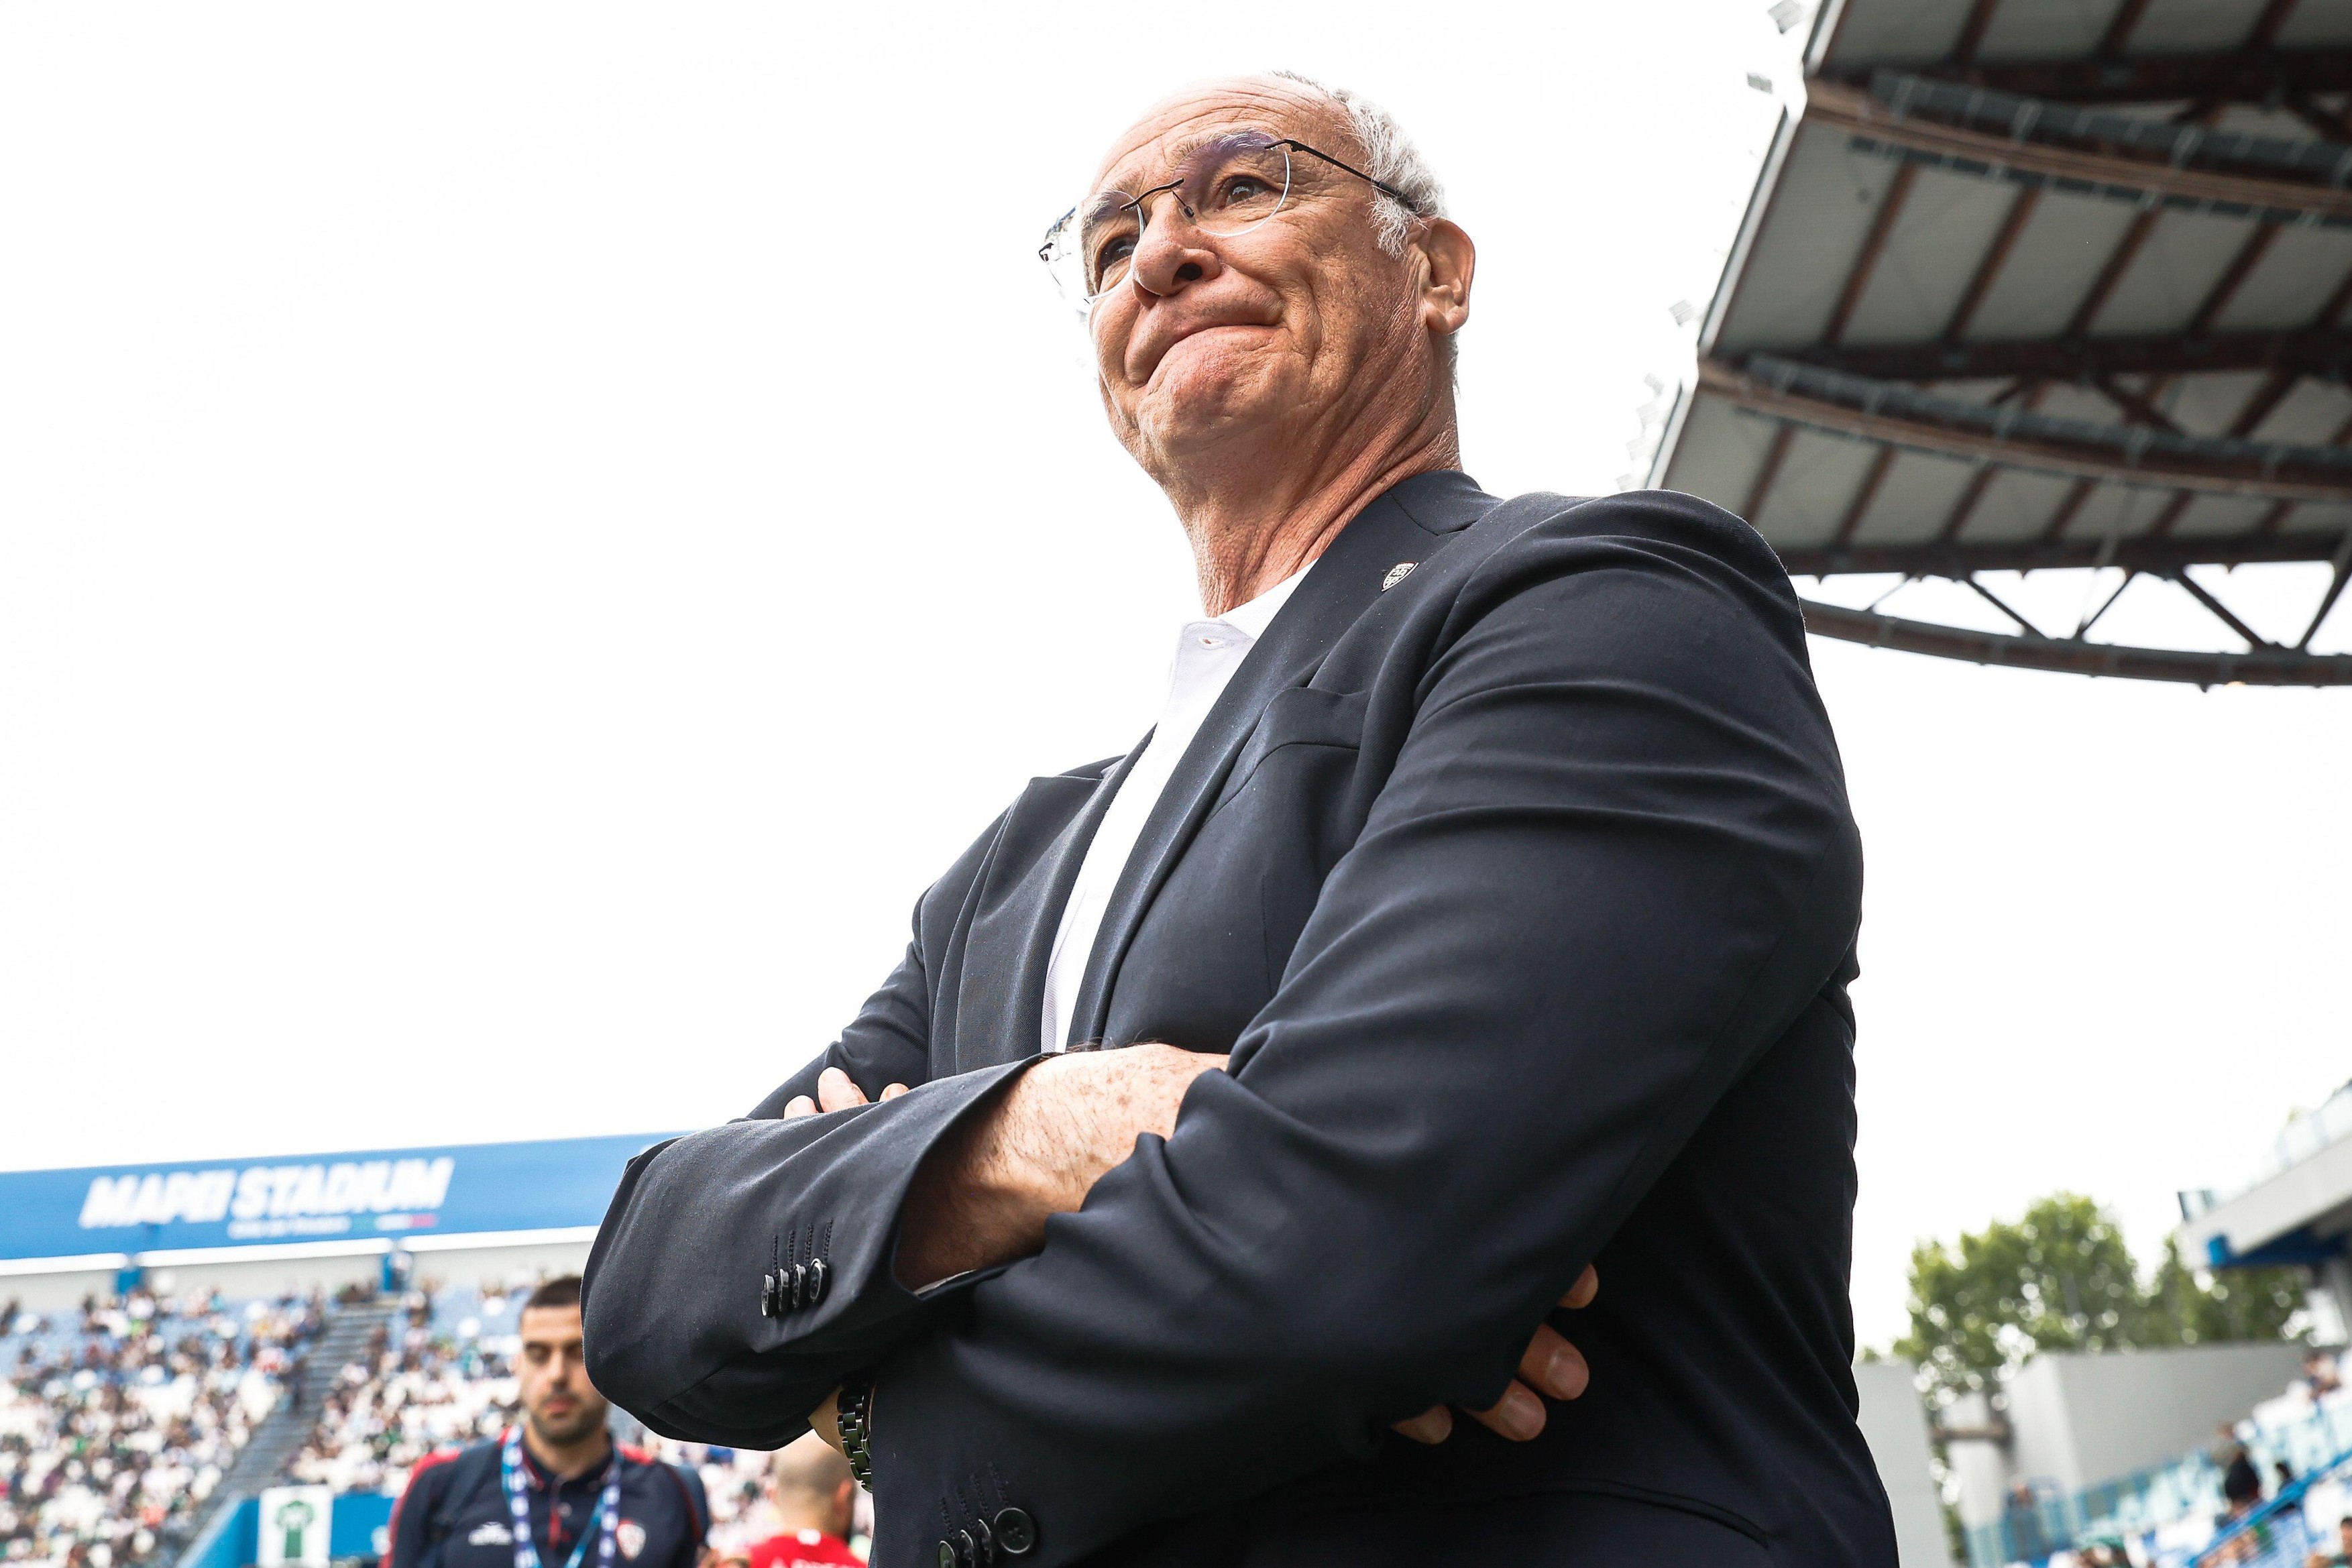 S-a răzgândit? Claudio Ranieri a spus la ce echipe s-ar întoarce în antrenorat: ”Aș fi tentat să spun ’da’”